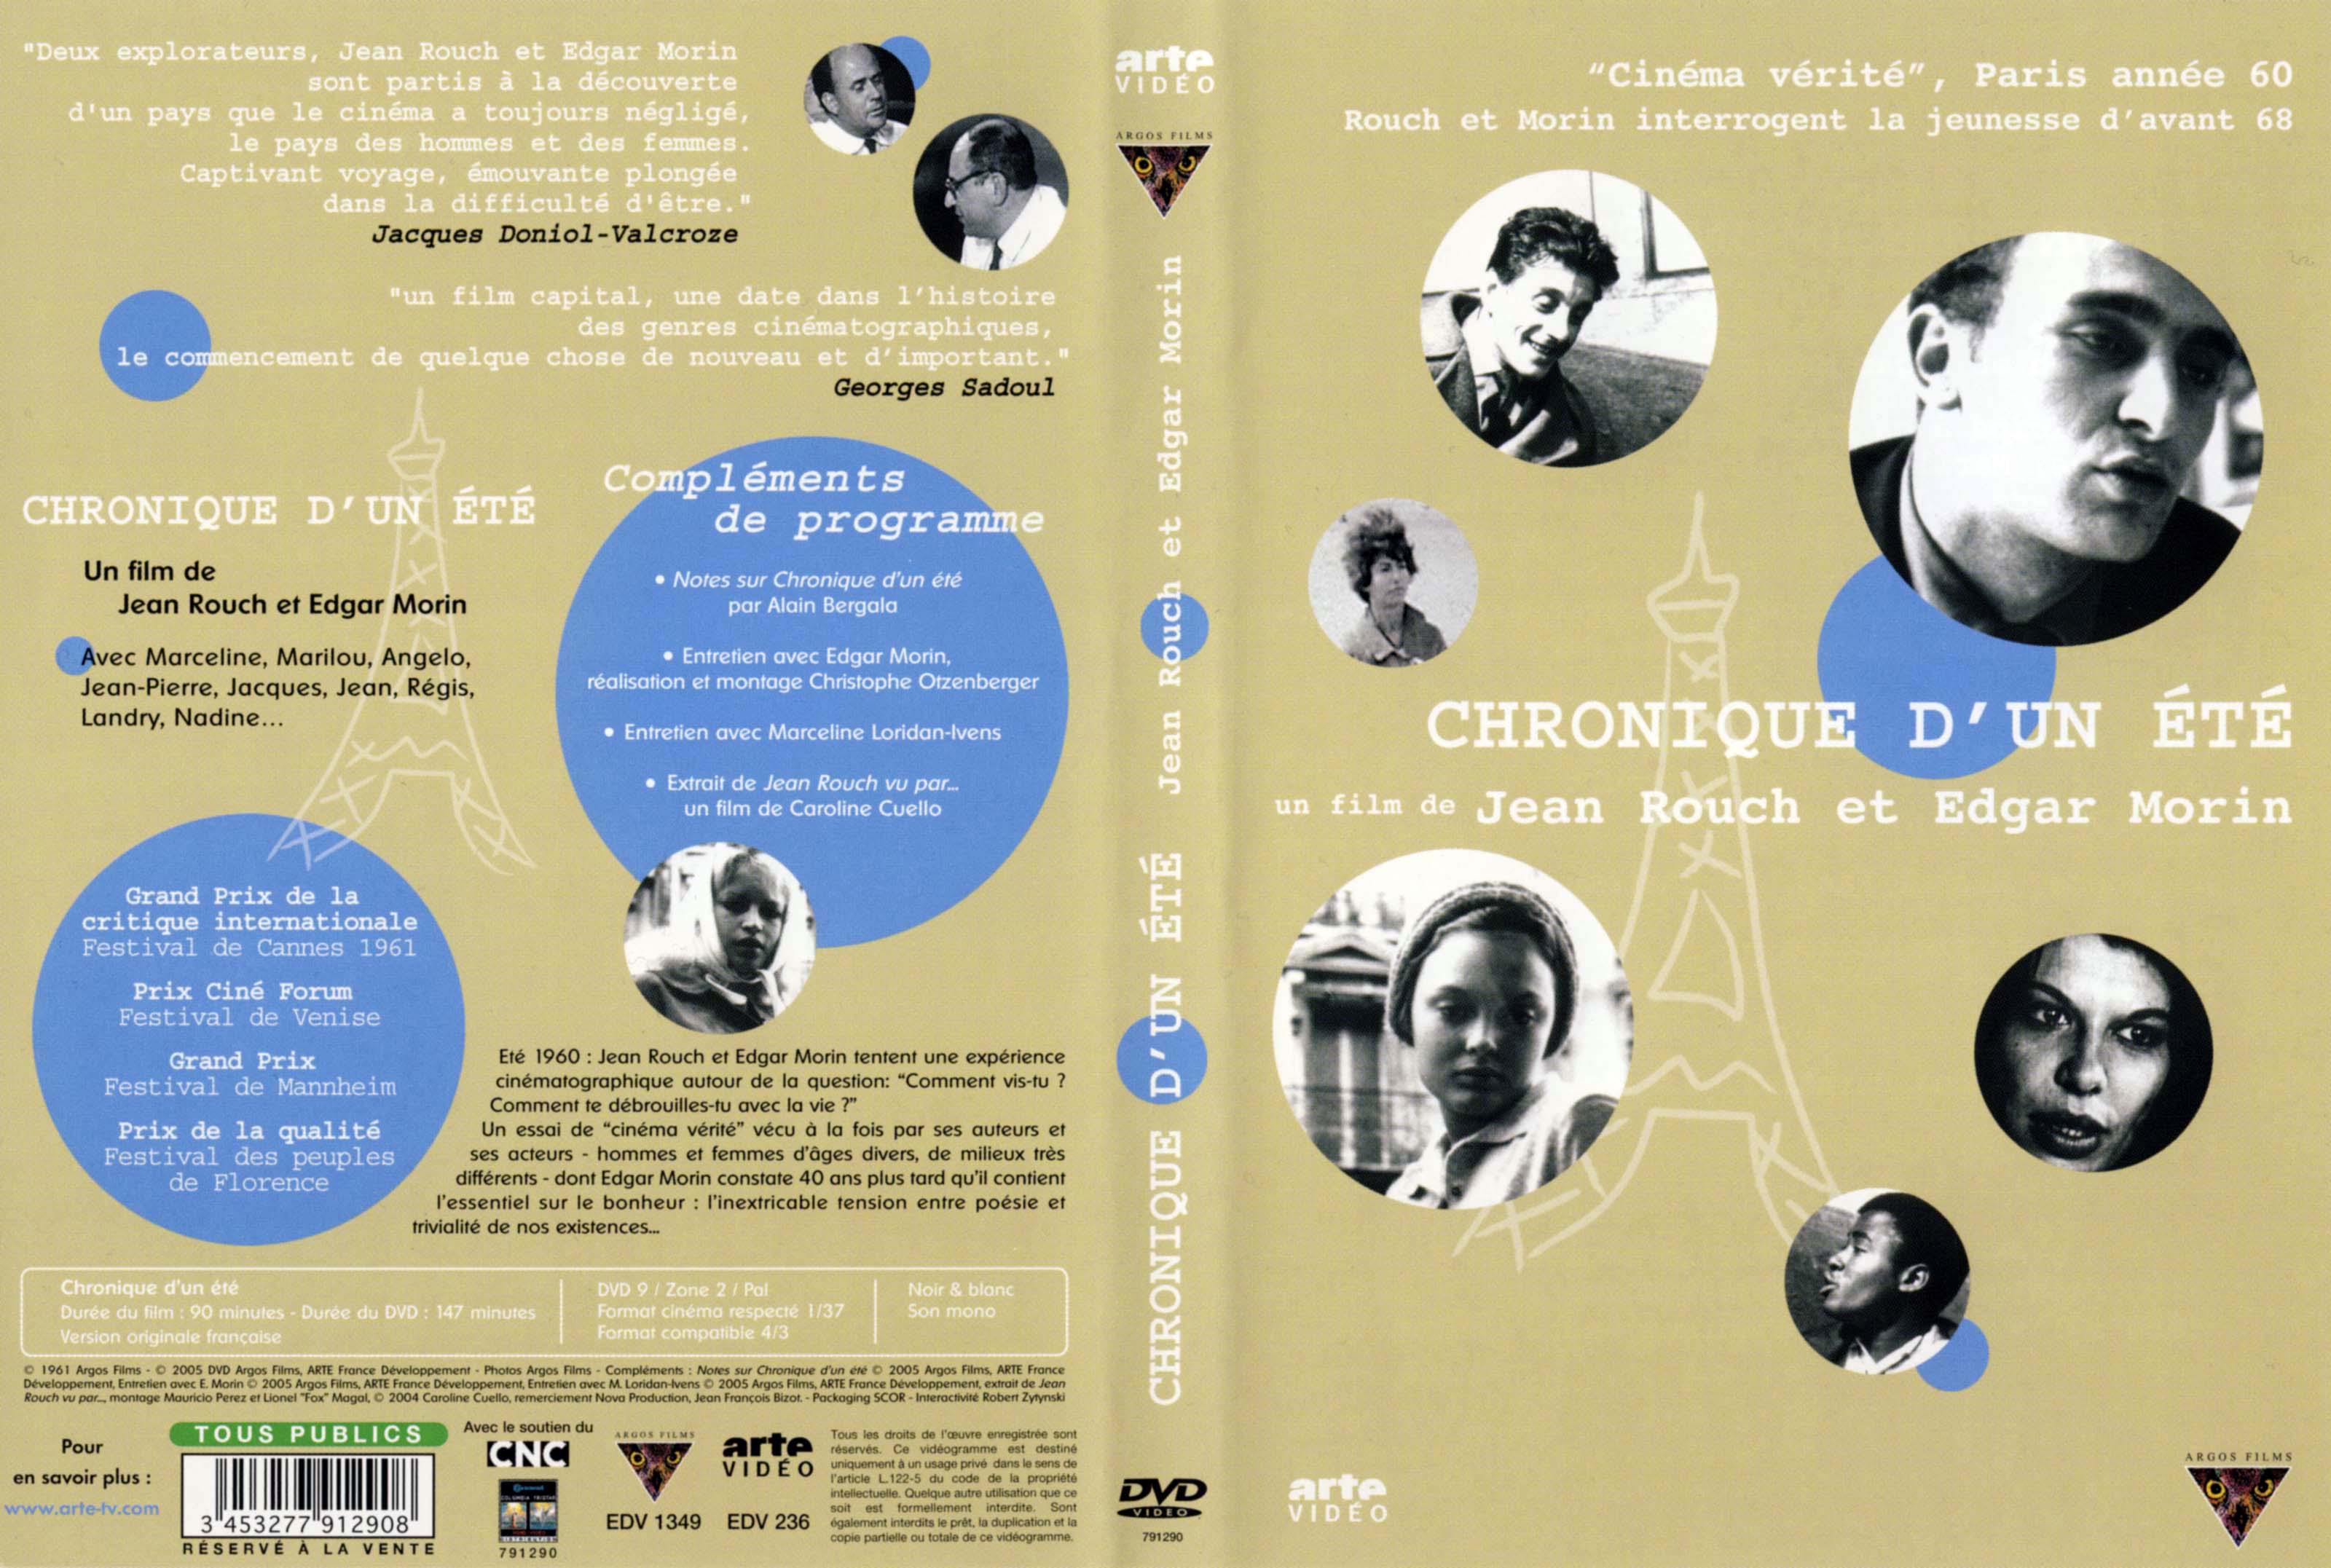 Jaquette DVD Chroniqe d